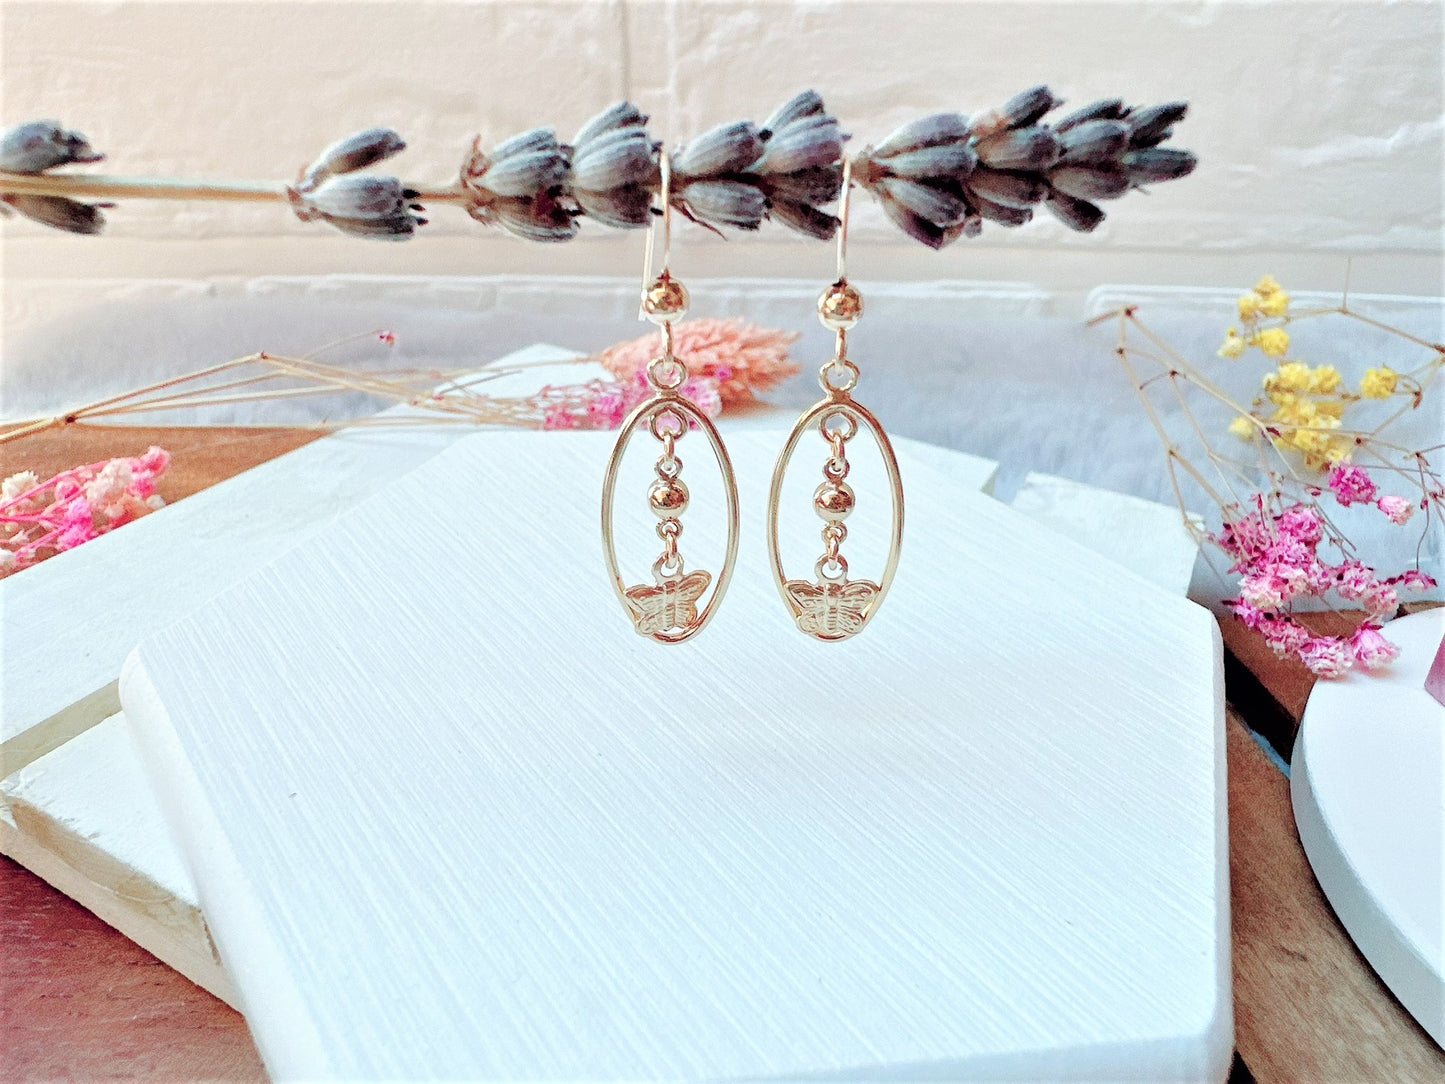 Butterfly Charm in Gold Oval Frame Earrings